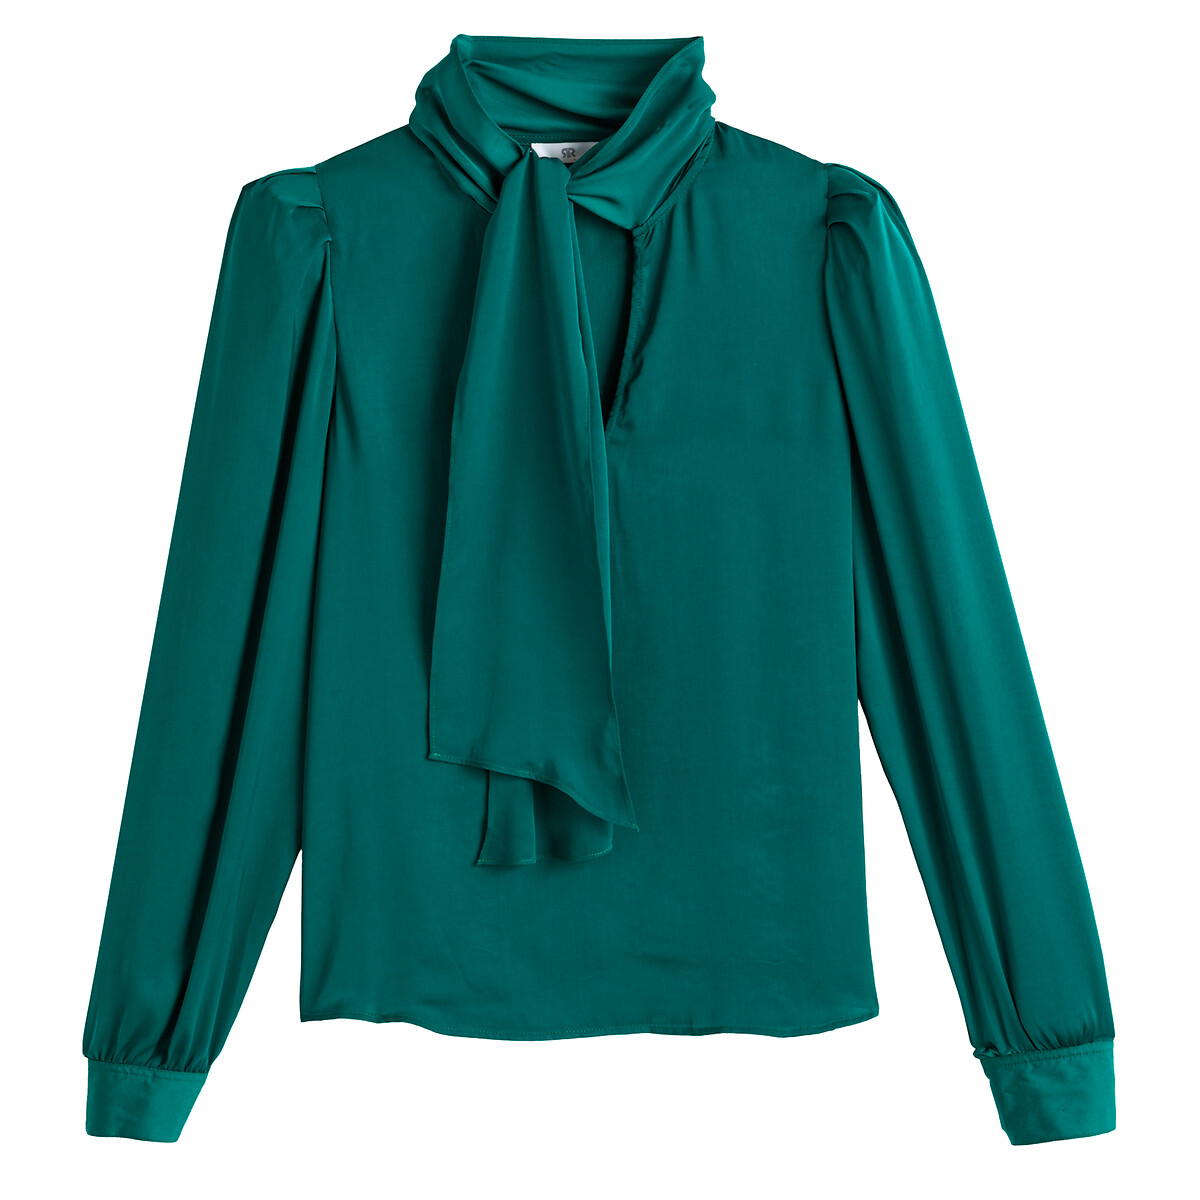 Блузка LA REDOUTE COLLECTIONS С галстуком 36 (FR) - 42 (RUS) зеленый, размер 36 (FR) - 42 (RUS) С галстуком 36 (FR) - 42 (RUS) зеленый - фото 5